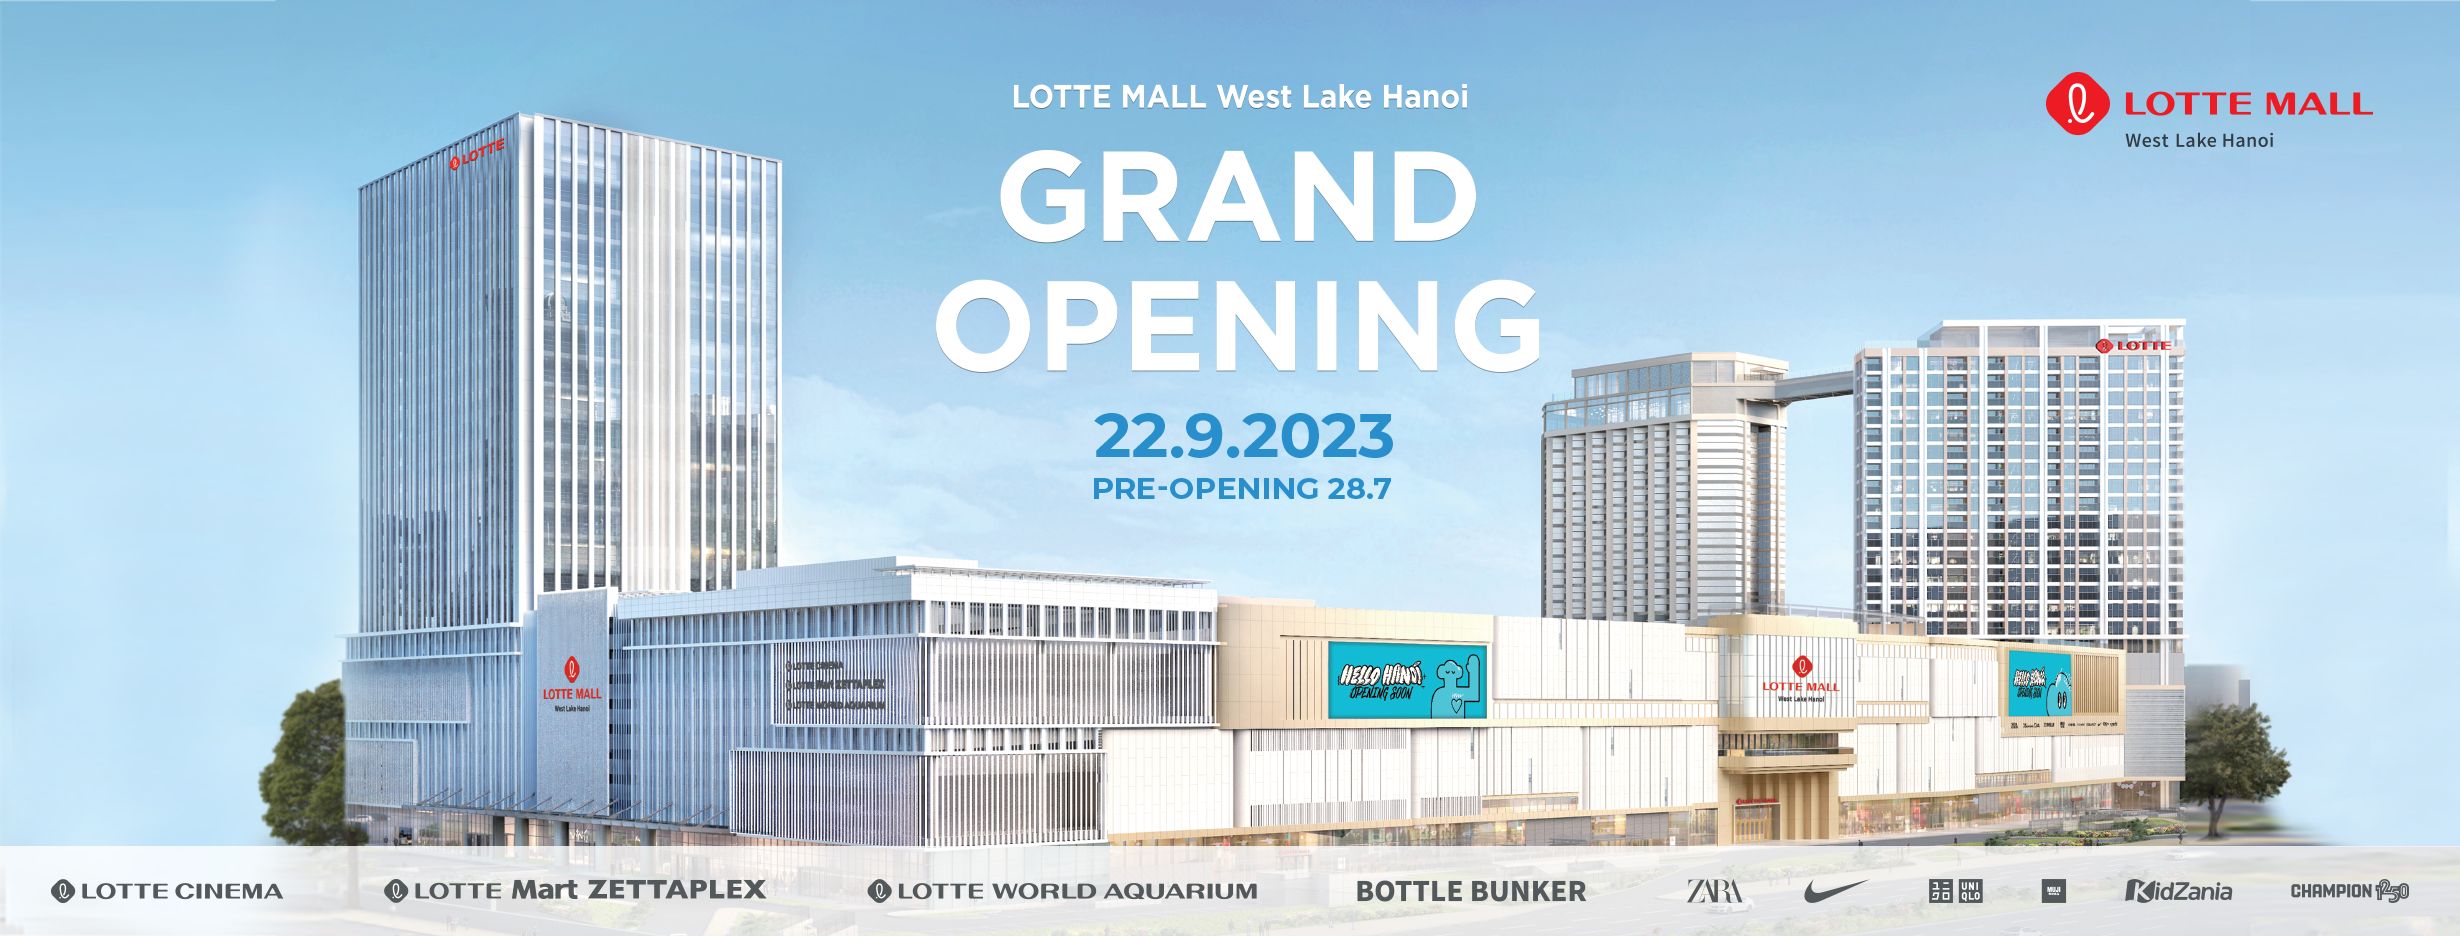 Dự án Lotte Mall West Lake Hanoi, Thủy cung Lotte World, Rạp chiếu phim Lotte Cinema, Siêu thị TTTM Lotte Mart giá vé vào cửa